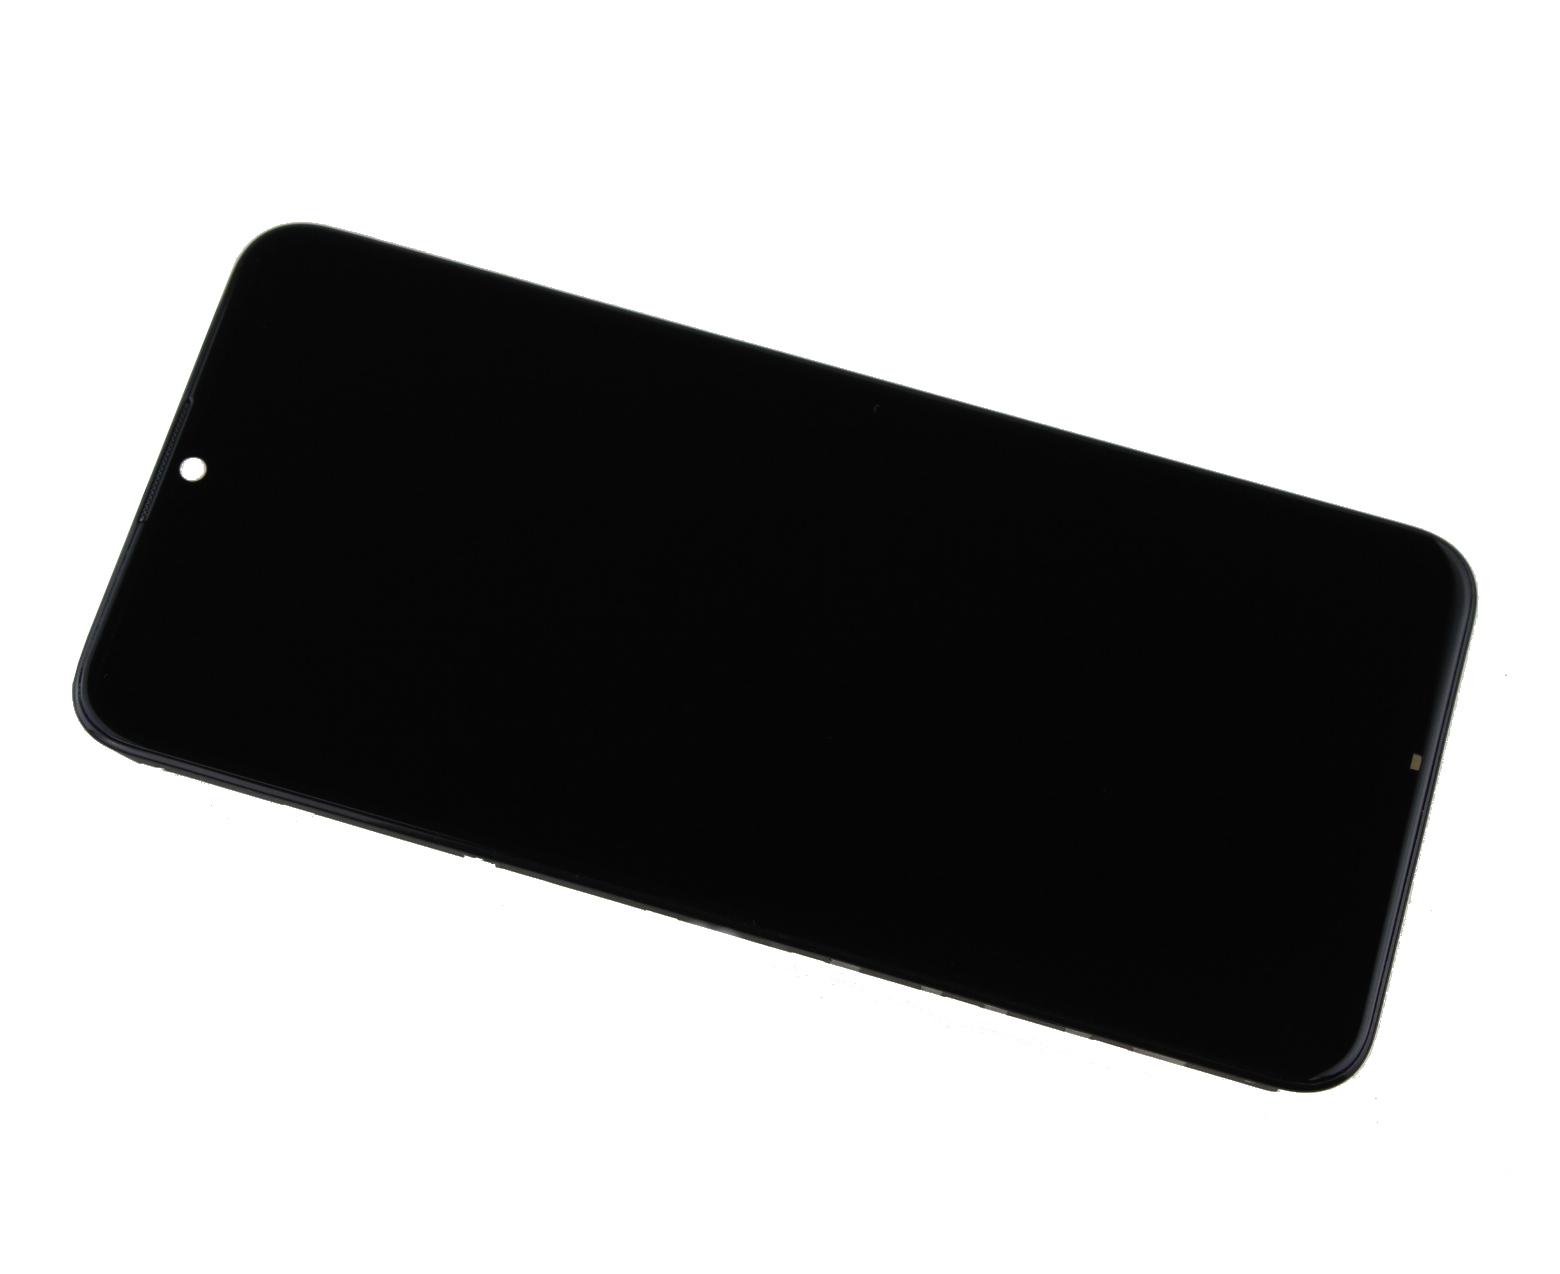 Originál LCD + Dotyková vrstva Huawei P Smart 2019 černá repasovaný díl - vyměněné sklíčko